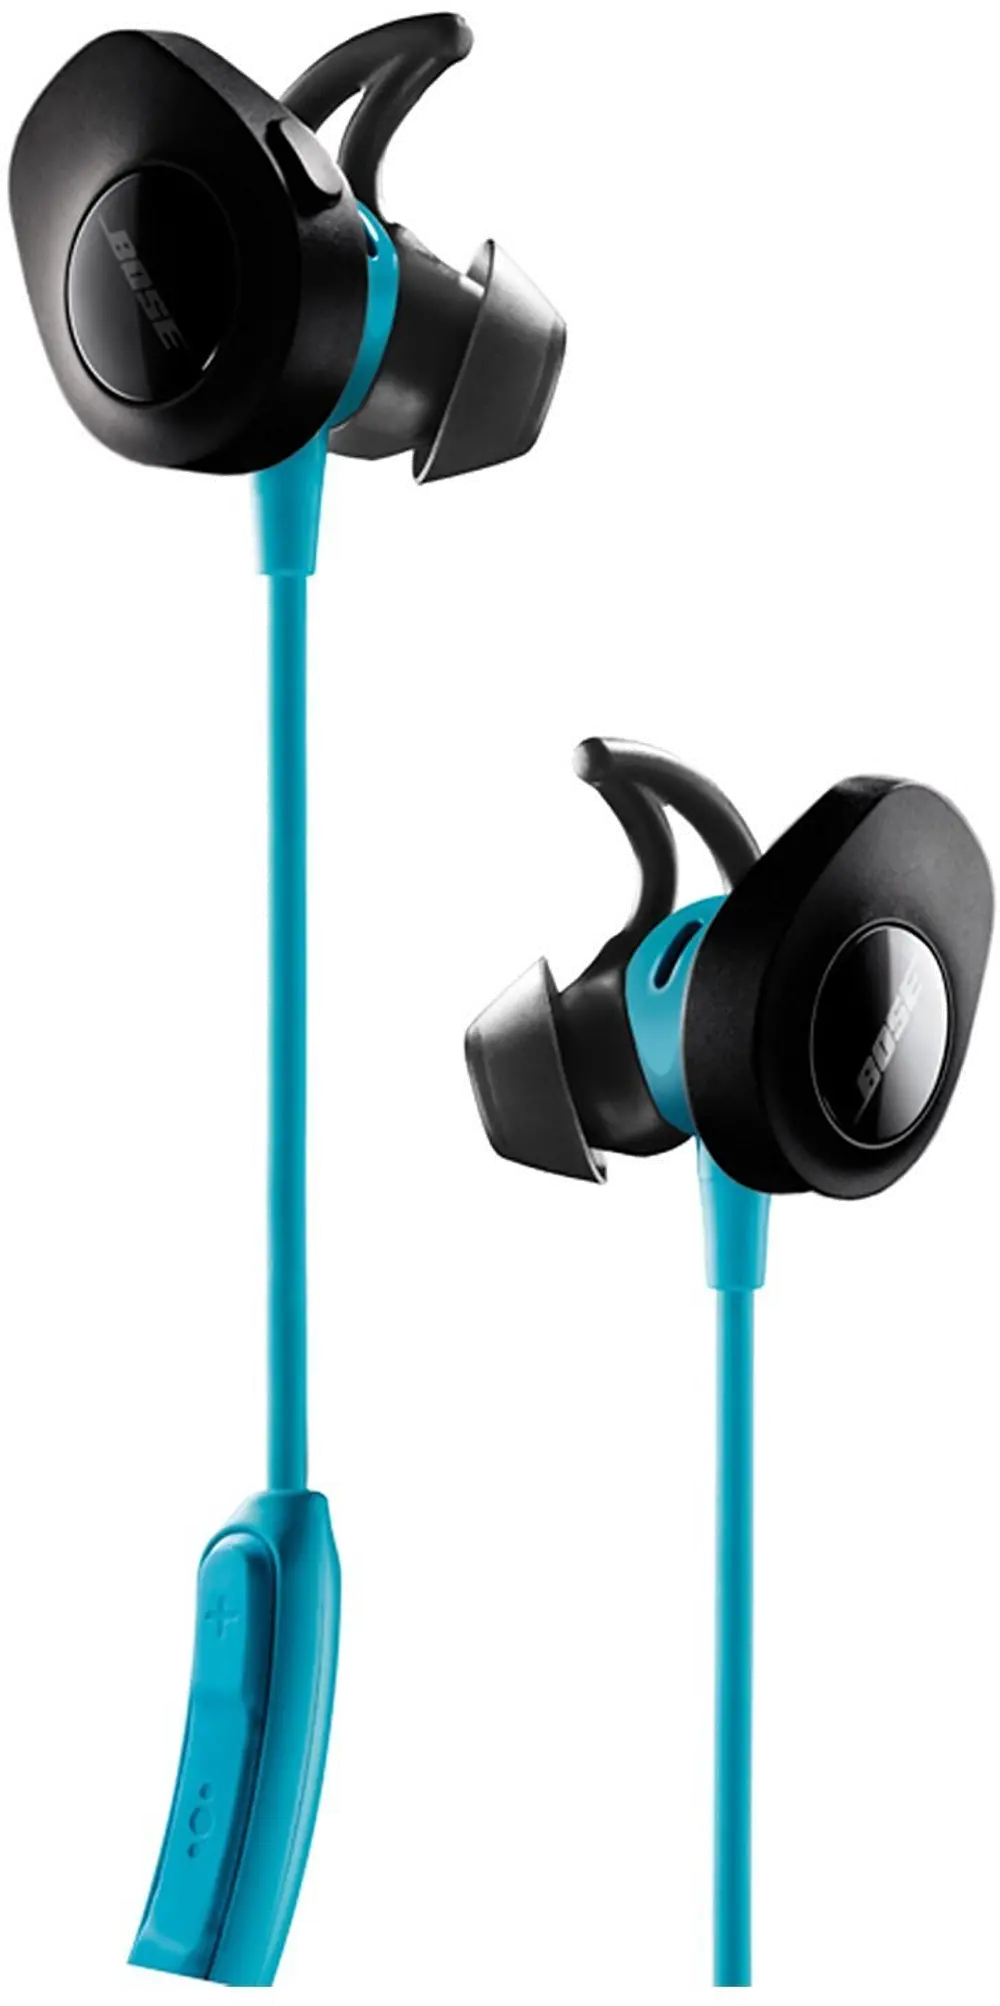 SNDSPT-WL,IE,AQUA Bose SoundSport Wireless Headphones - Aqua-1